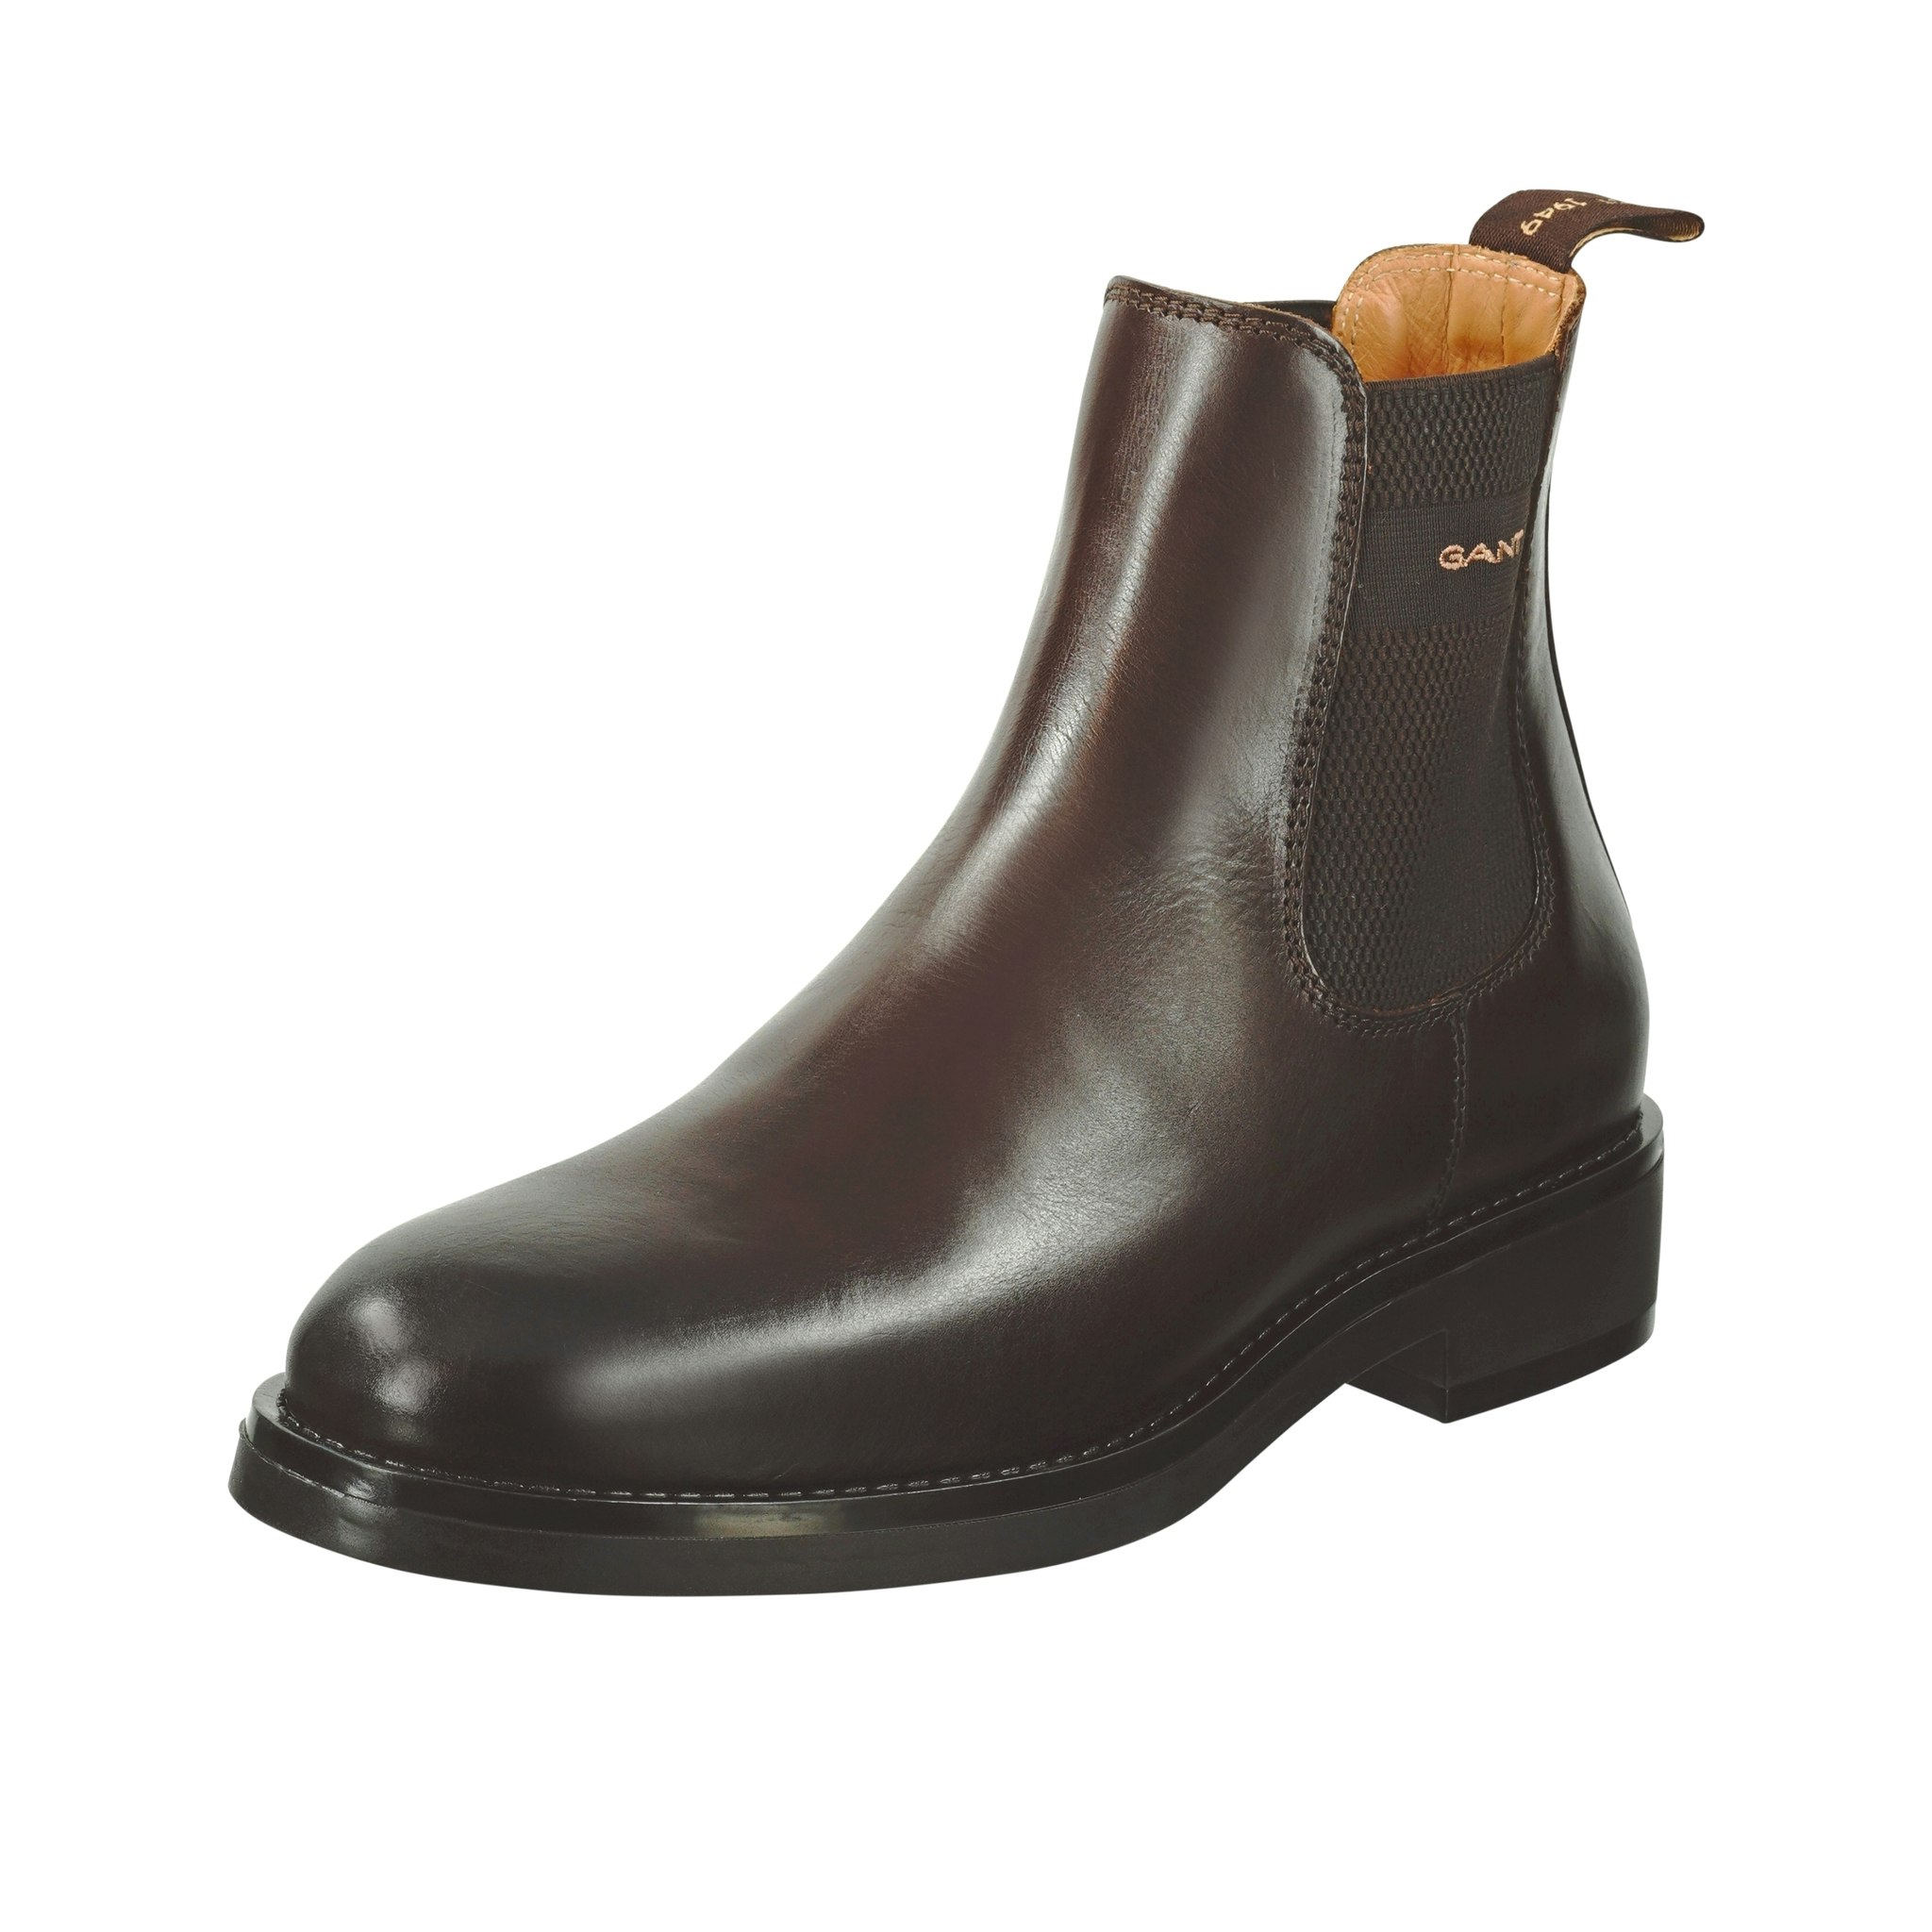 Brun Gant Boots - Trampolin - Köp skor online och i fysisk butik hos oss!